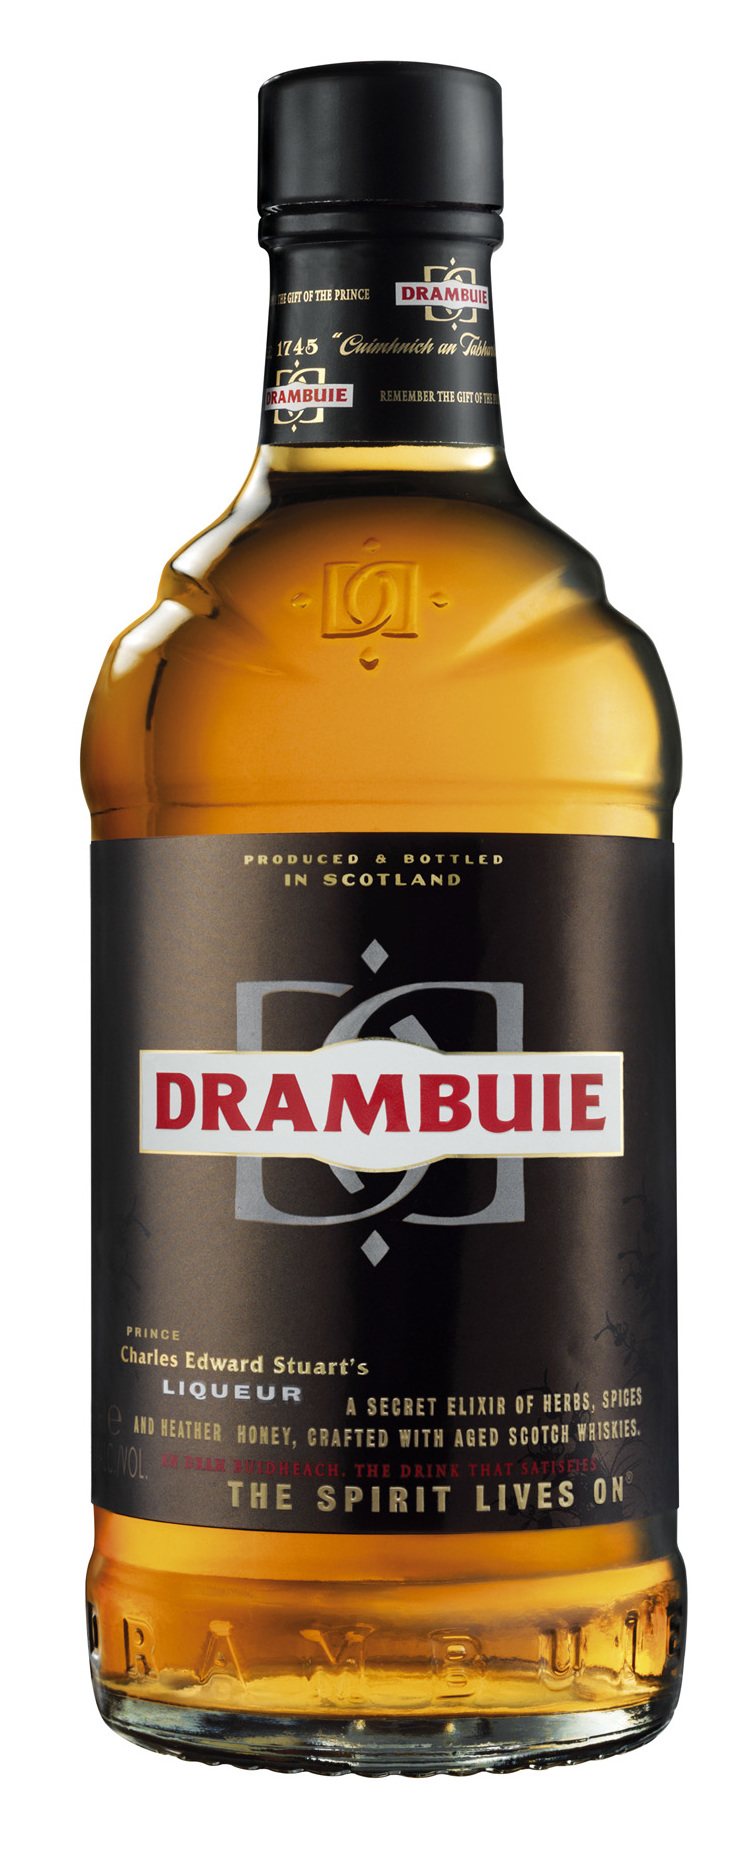 New_drambuie_bottle.jpg